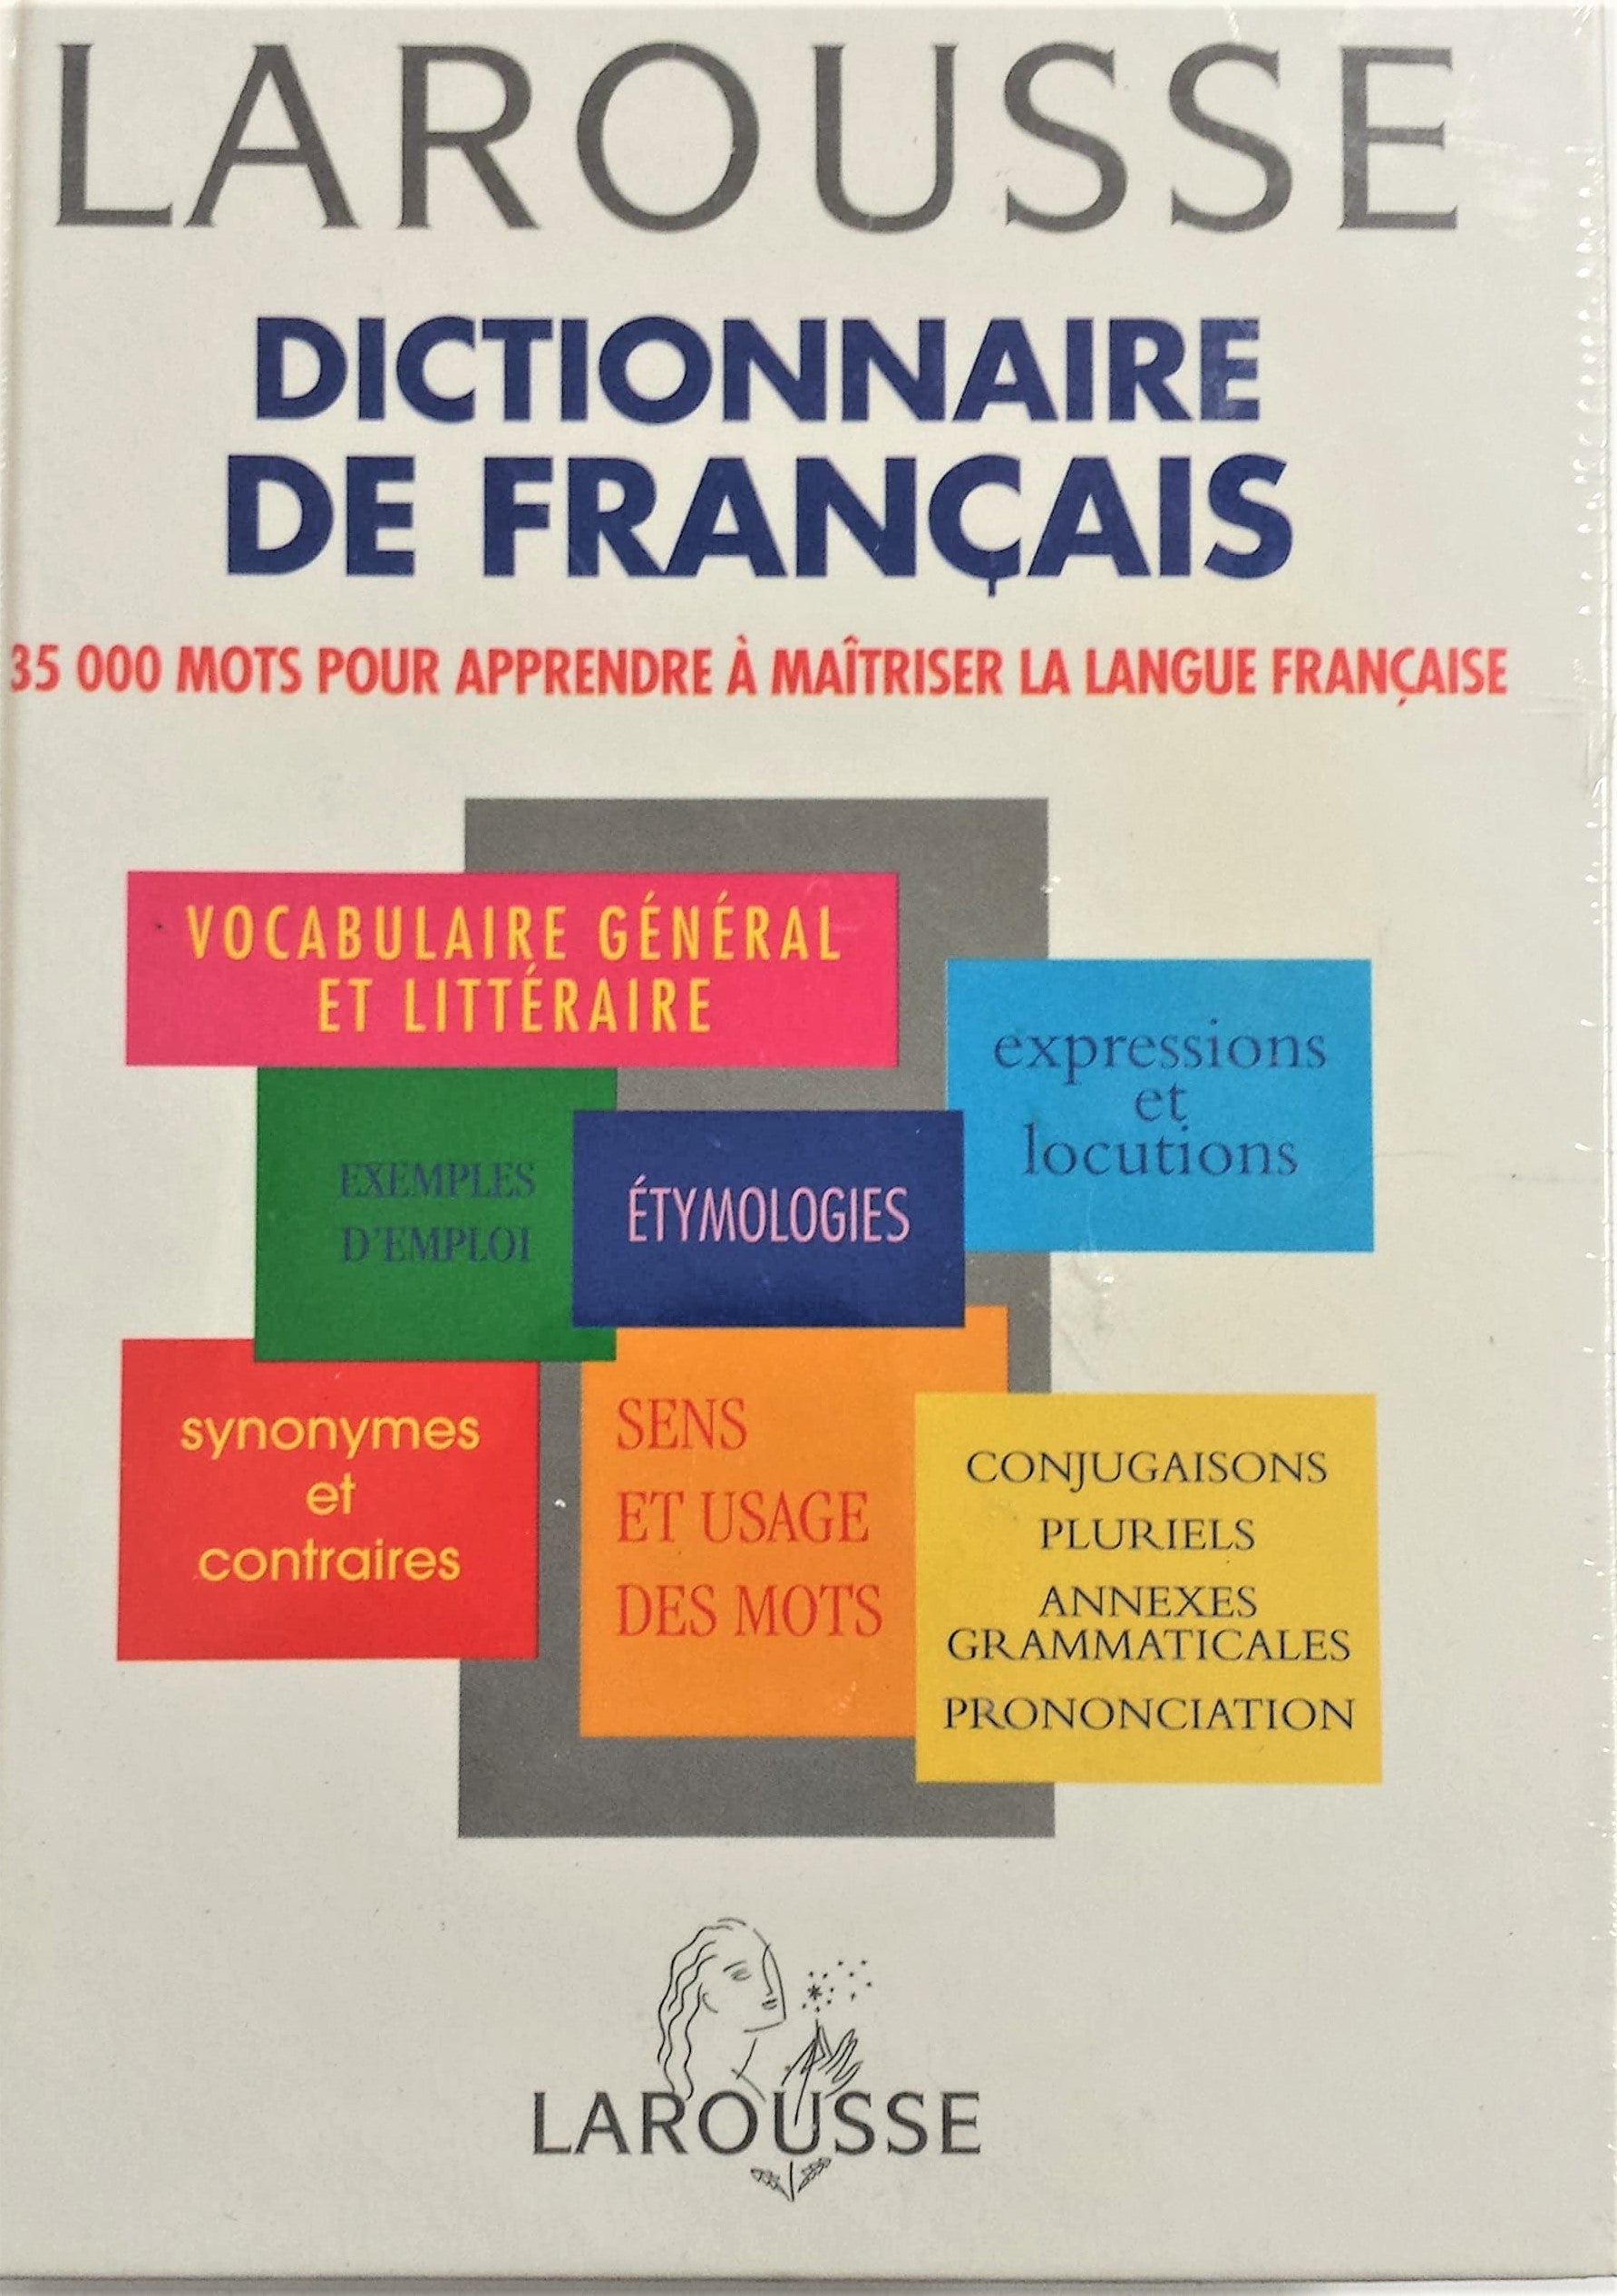 Dictionnaire de francais Larousse